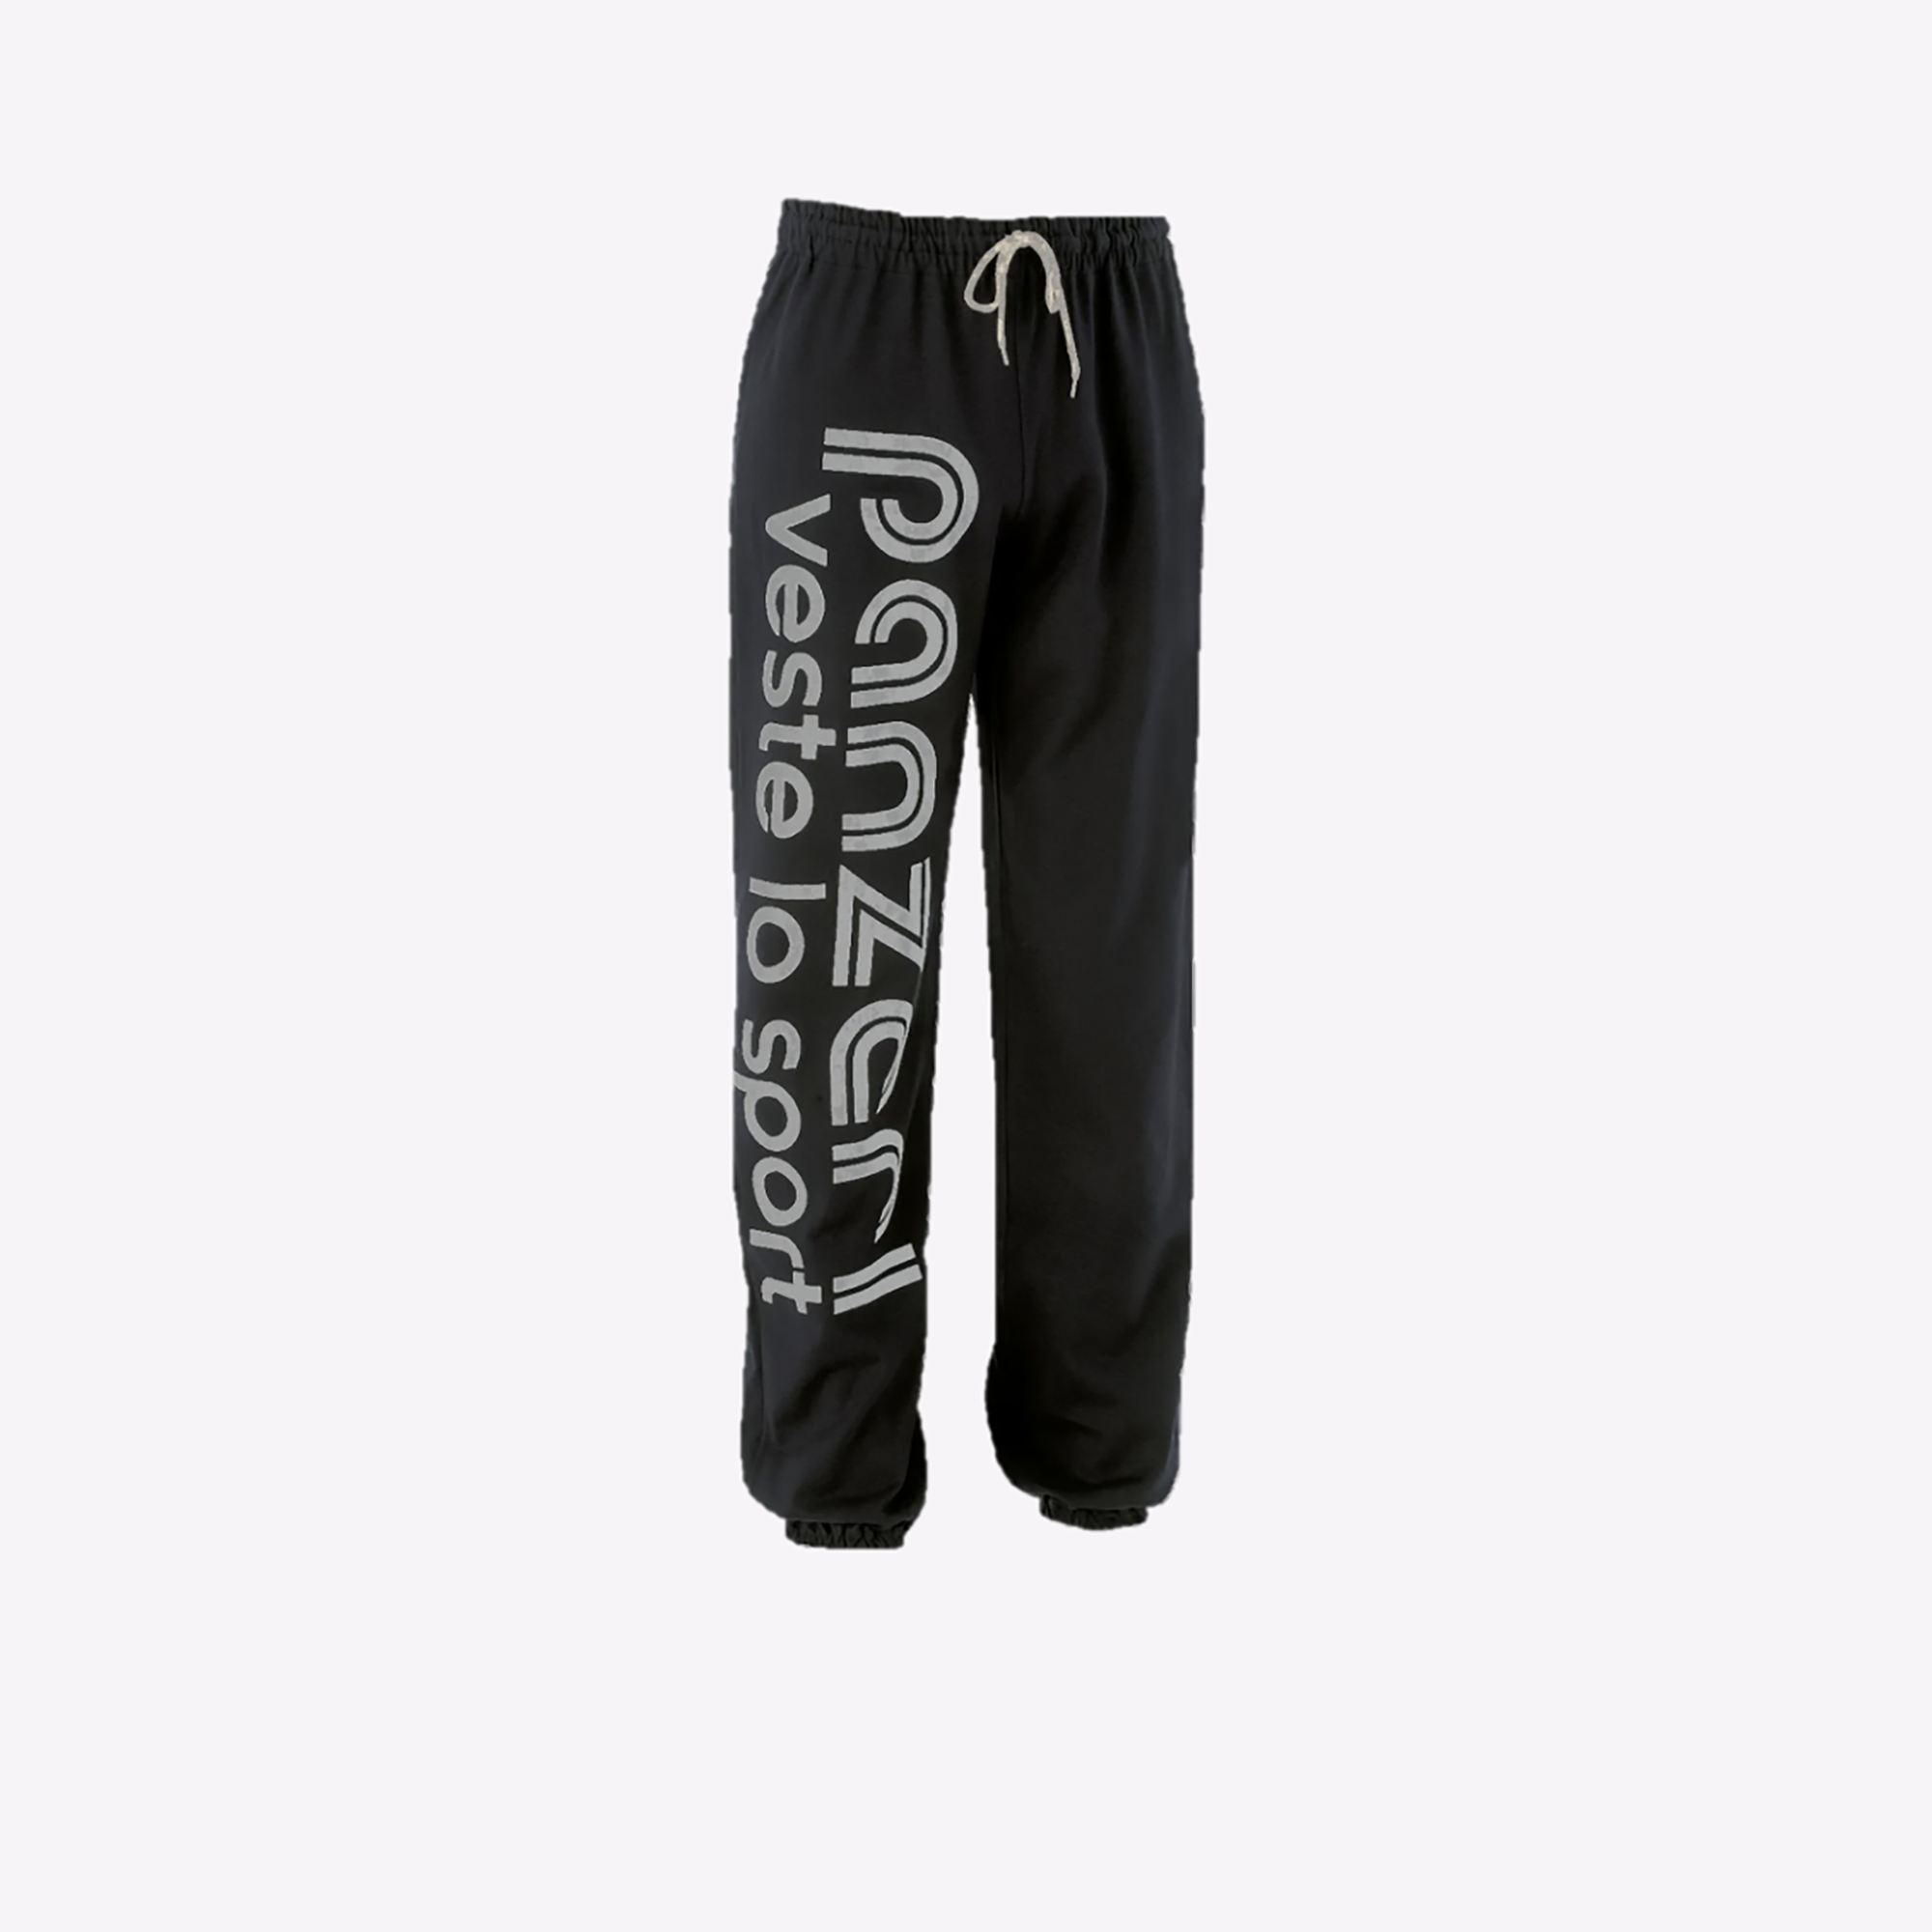 Panzeri - Hobby l Noir pantsurvt - Pantalon de survêtement - Noir - Taille  S : : Mode